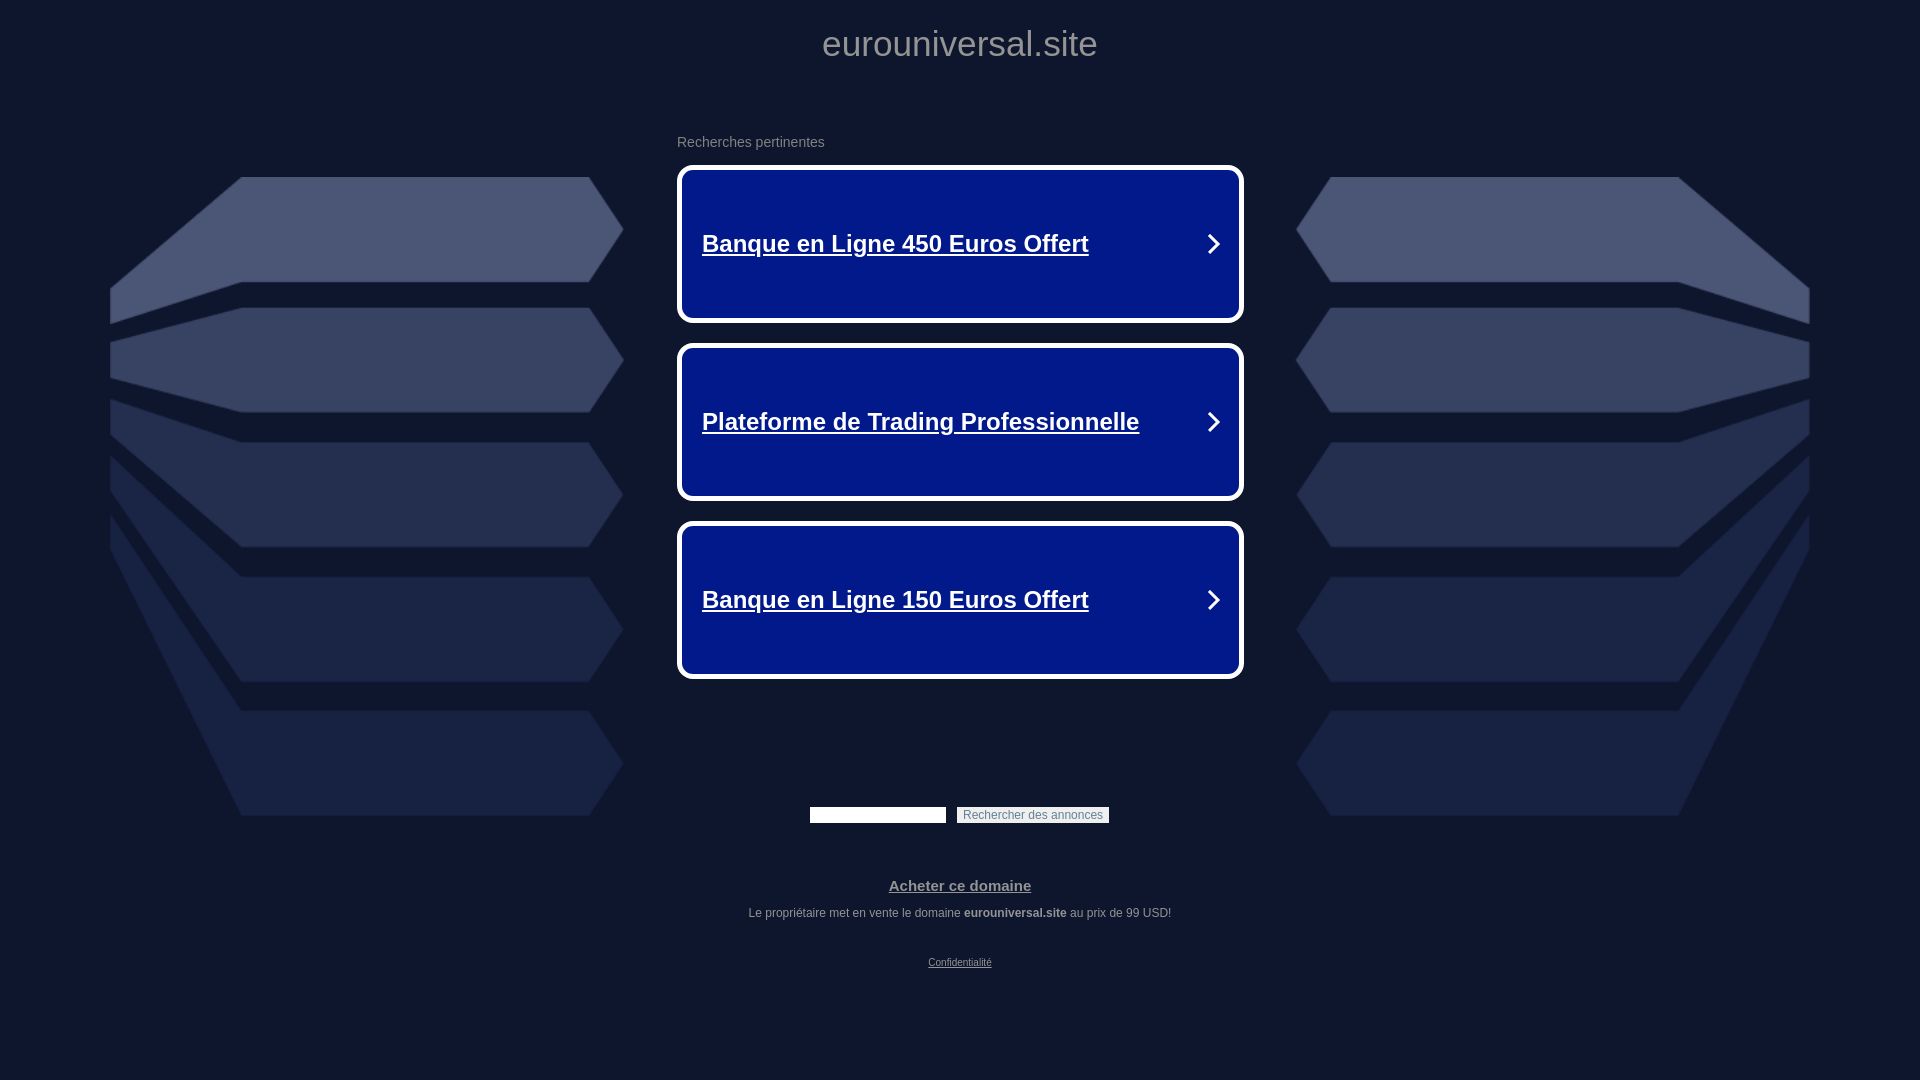 网站状态 panelevaxx.eurouniversal.site 是  在线的